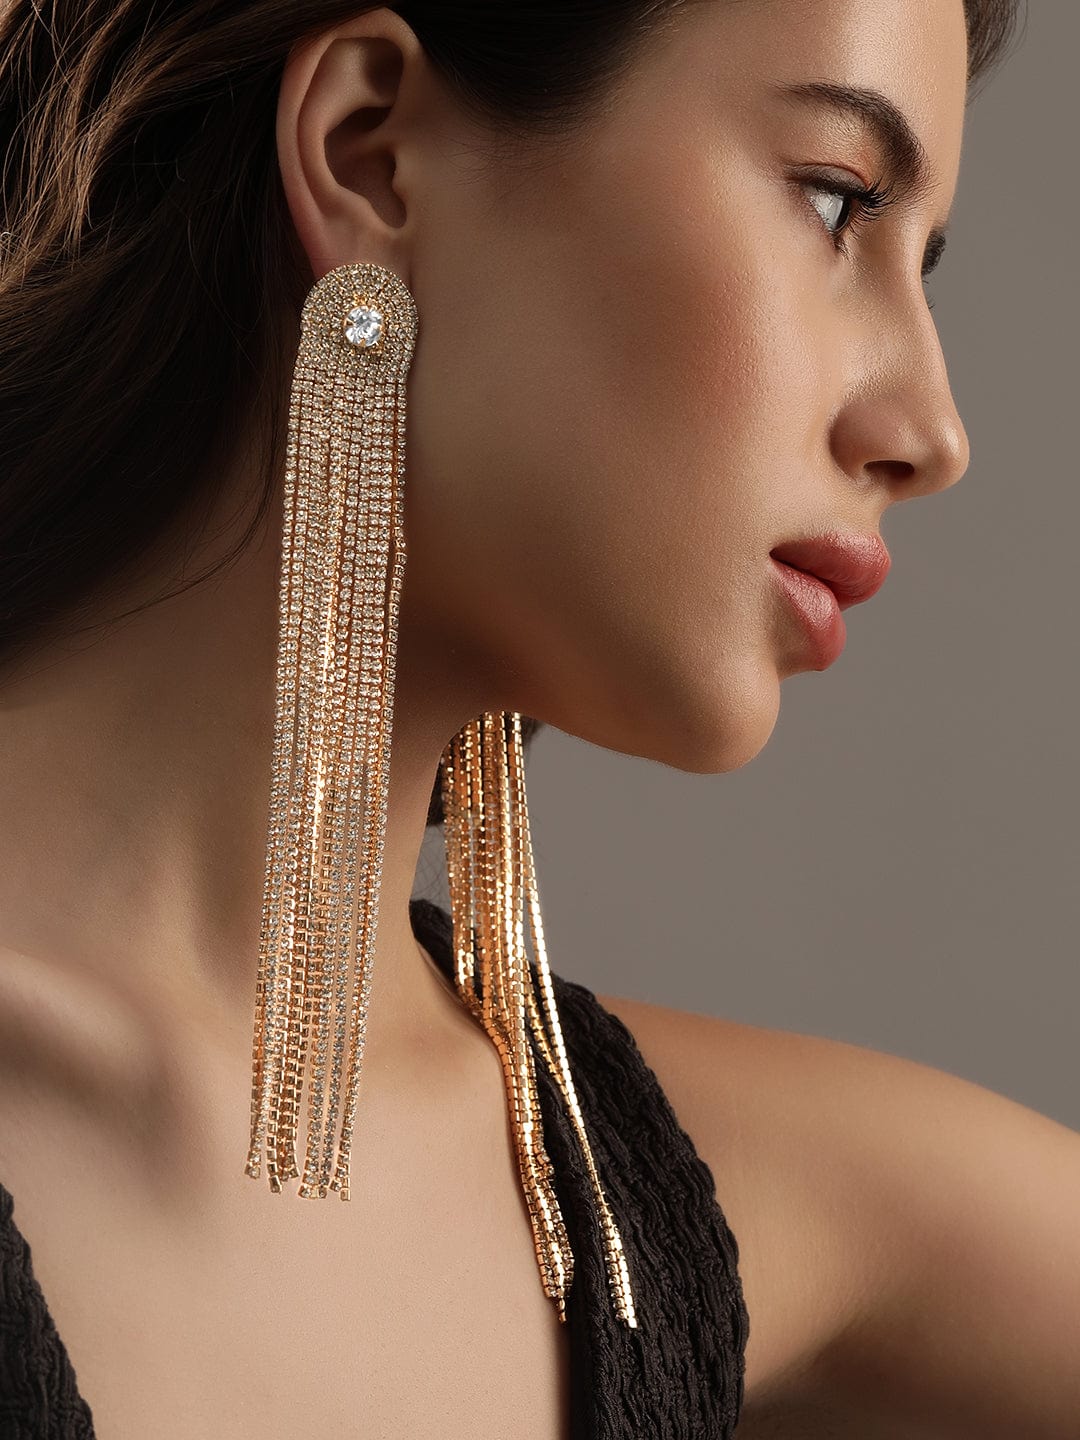 Rubans 18K Gold plated Glamorous Shoulder Duster Earrings Earrings